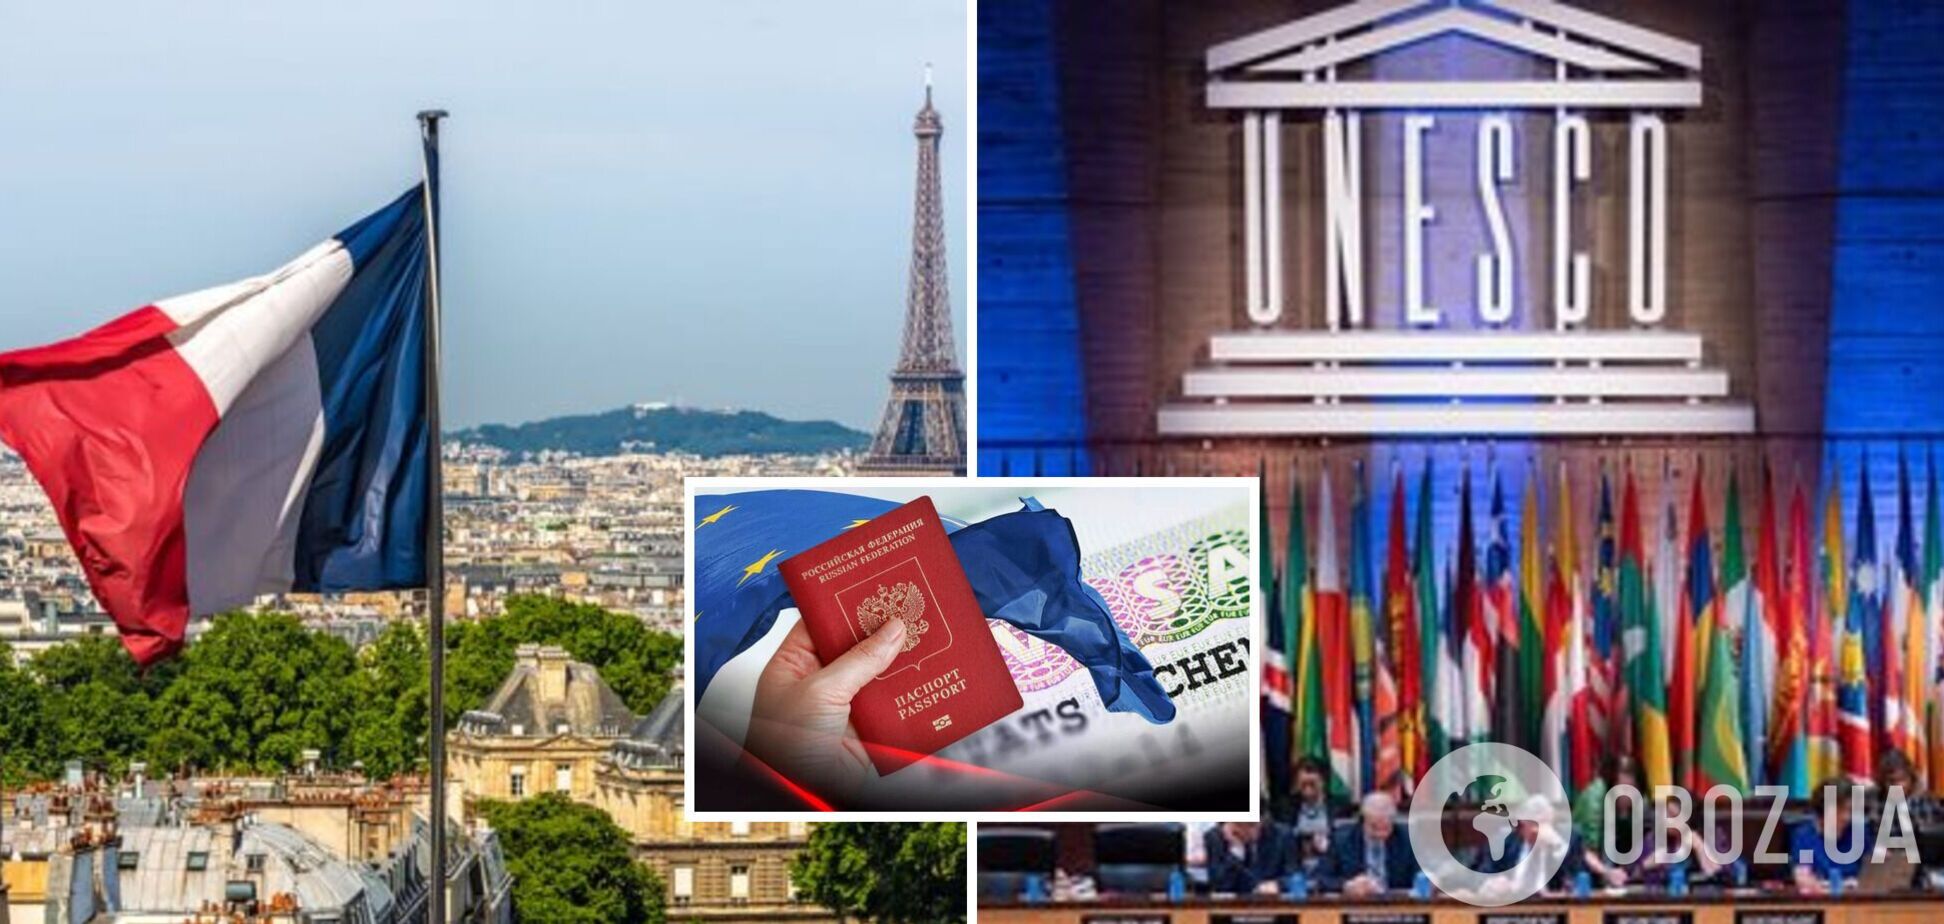 Представники Росії не встигли на відкриття конференції ЮНЕСКО: Франція затримала видачу віз для них